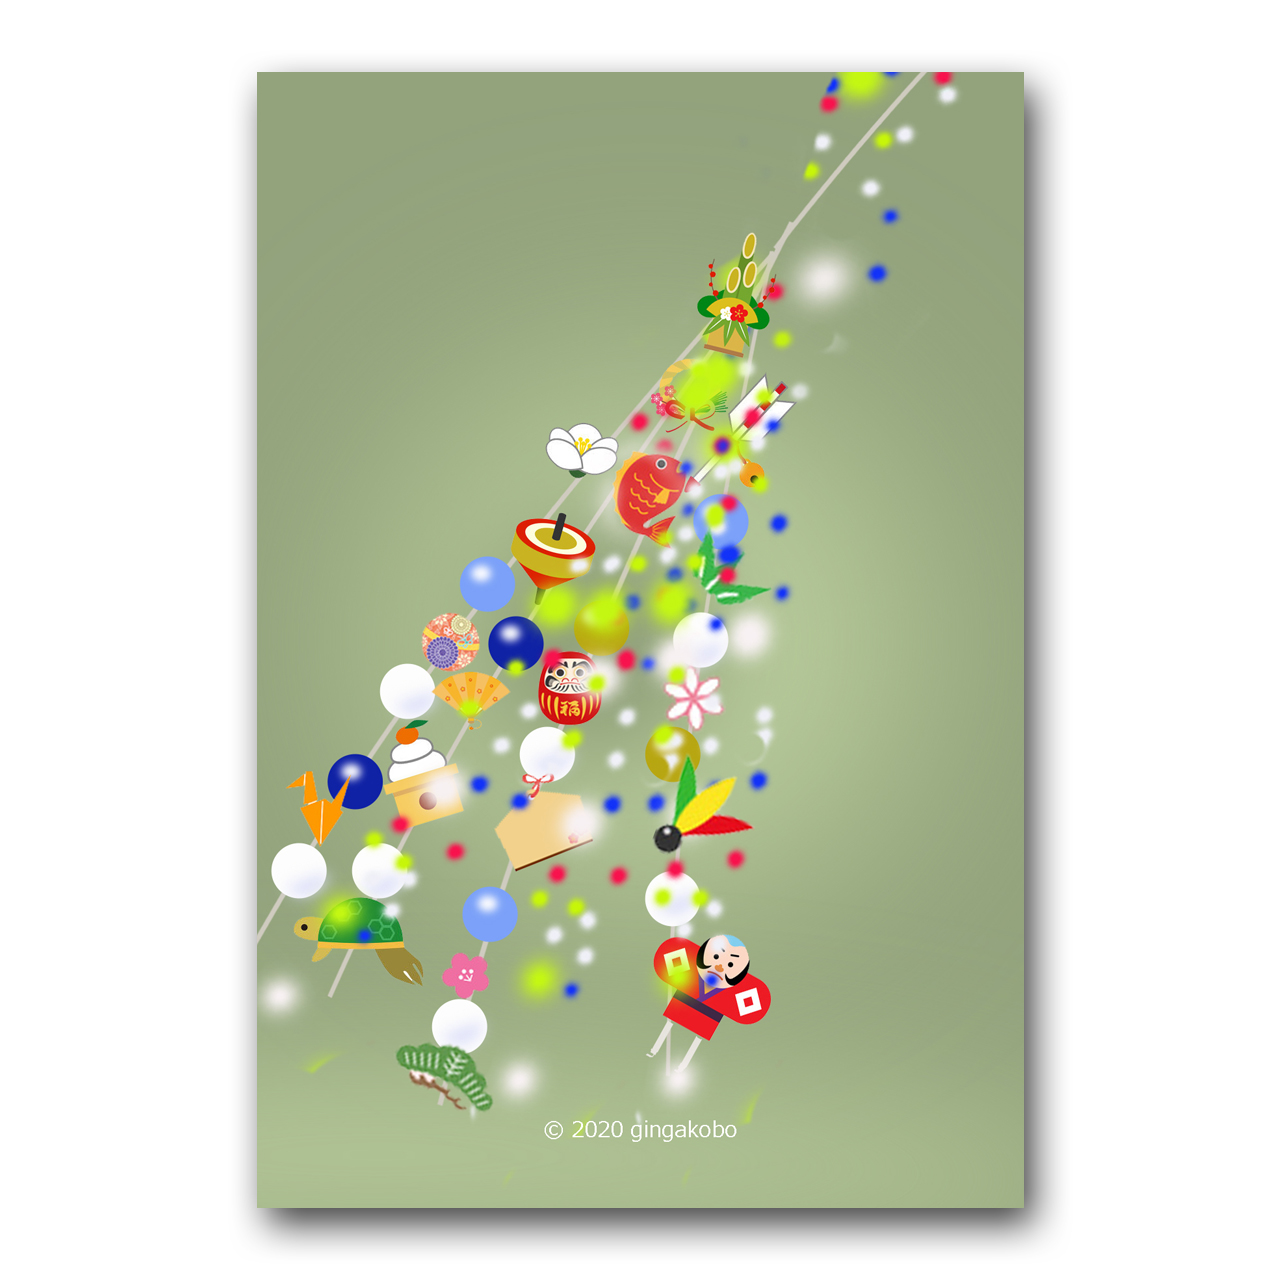 願いが新しい心を生む 正月 小正月 新年 ほっこり癒しのイラストポストカード2枚組 No 1230 Iichi ハンドメイド クラフト作品 手仕事品の通販